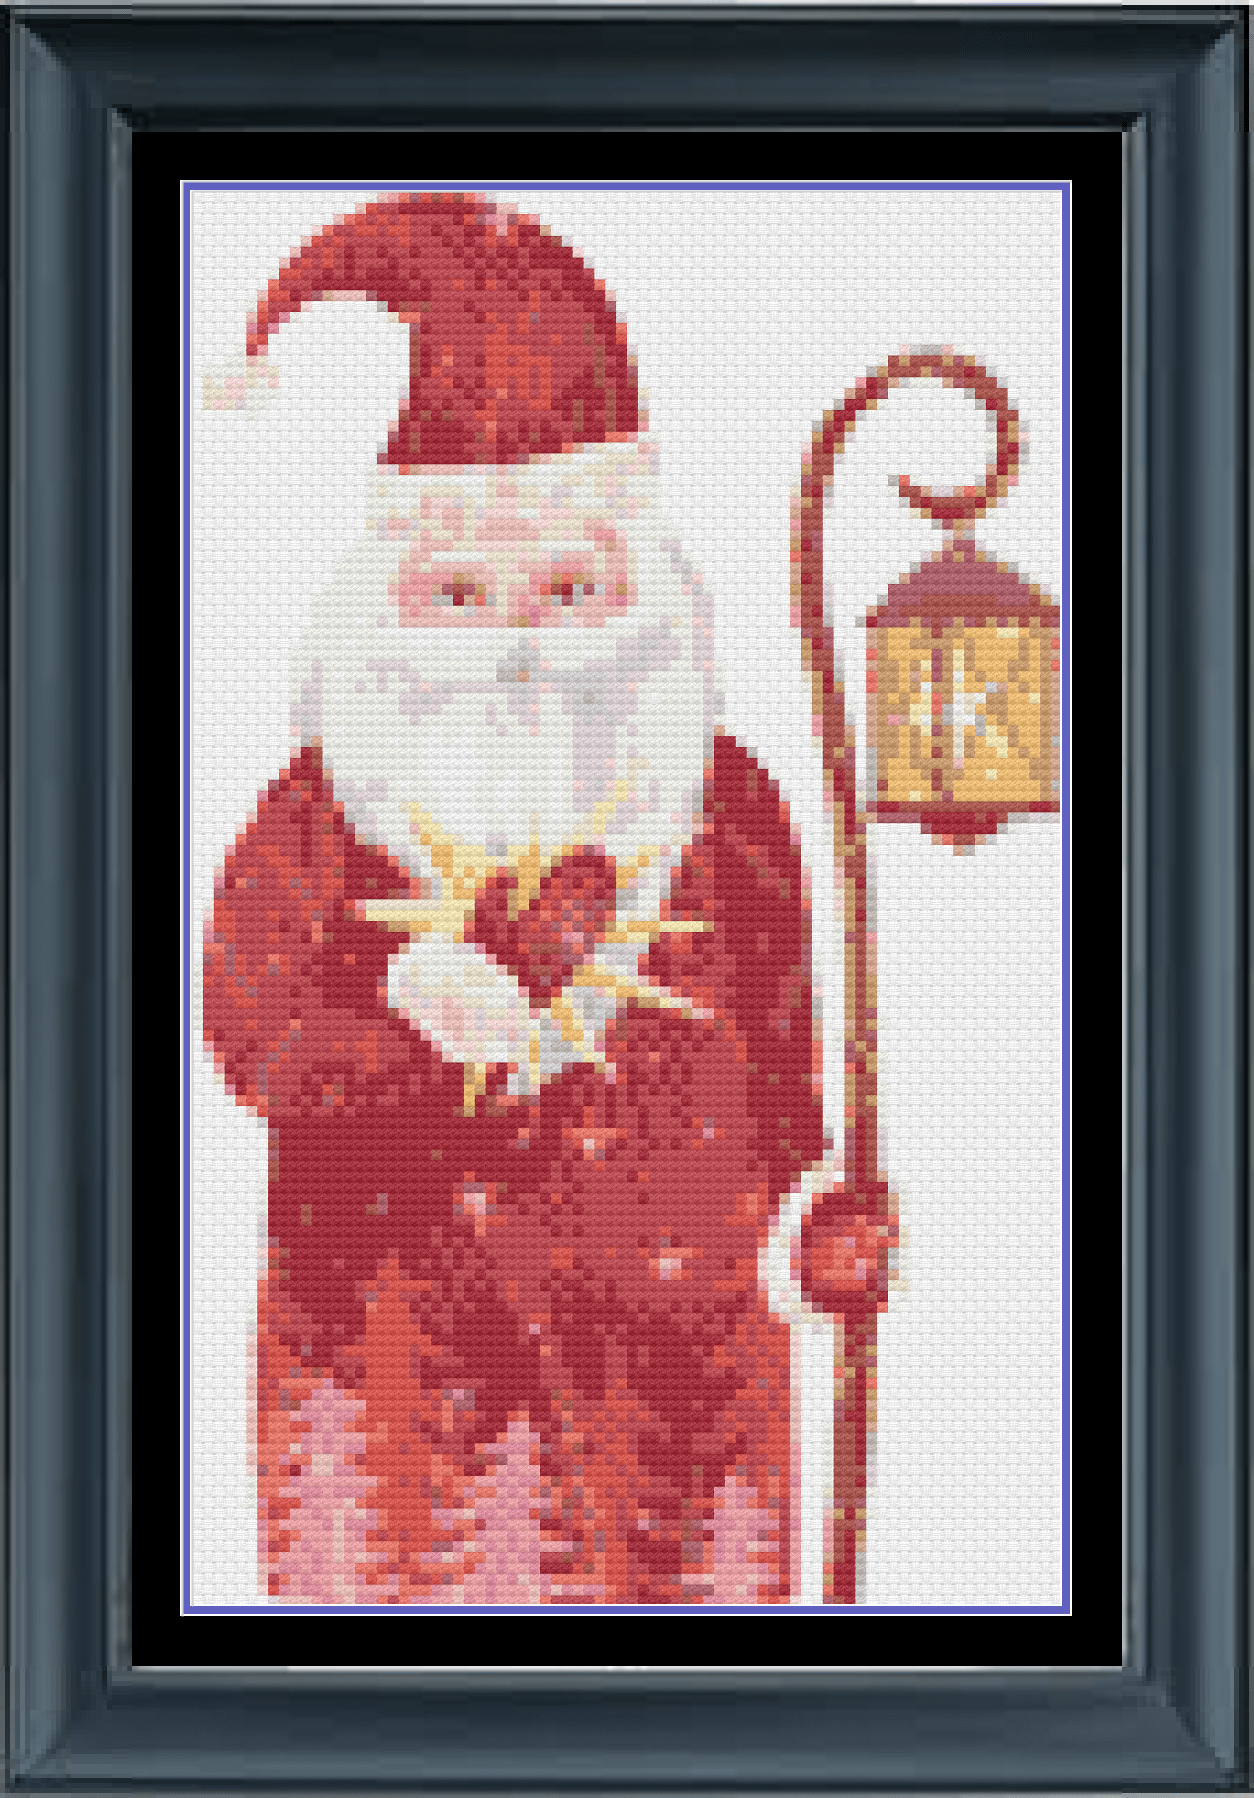 Stitching Jules Design Cross Stitch Pattern Santa Claus Christmas Kris Kringle Holiday Cross Stitch Embroidery Needlepoint Pattern PDF Download Pattern Keeper Ready